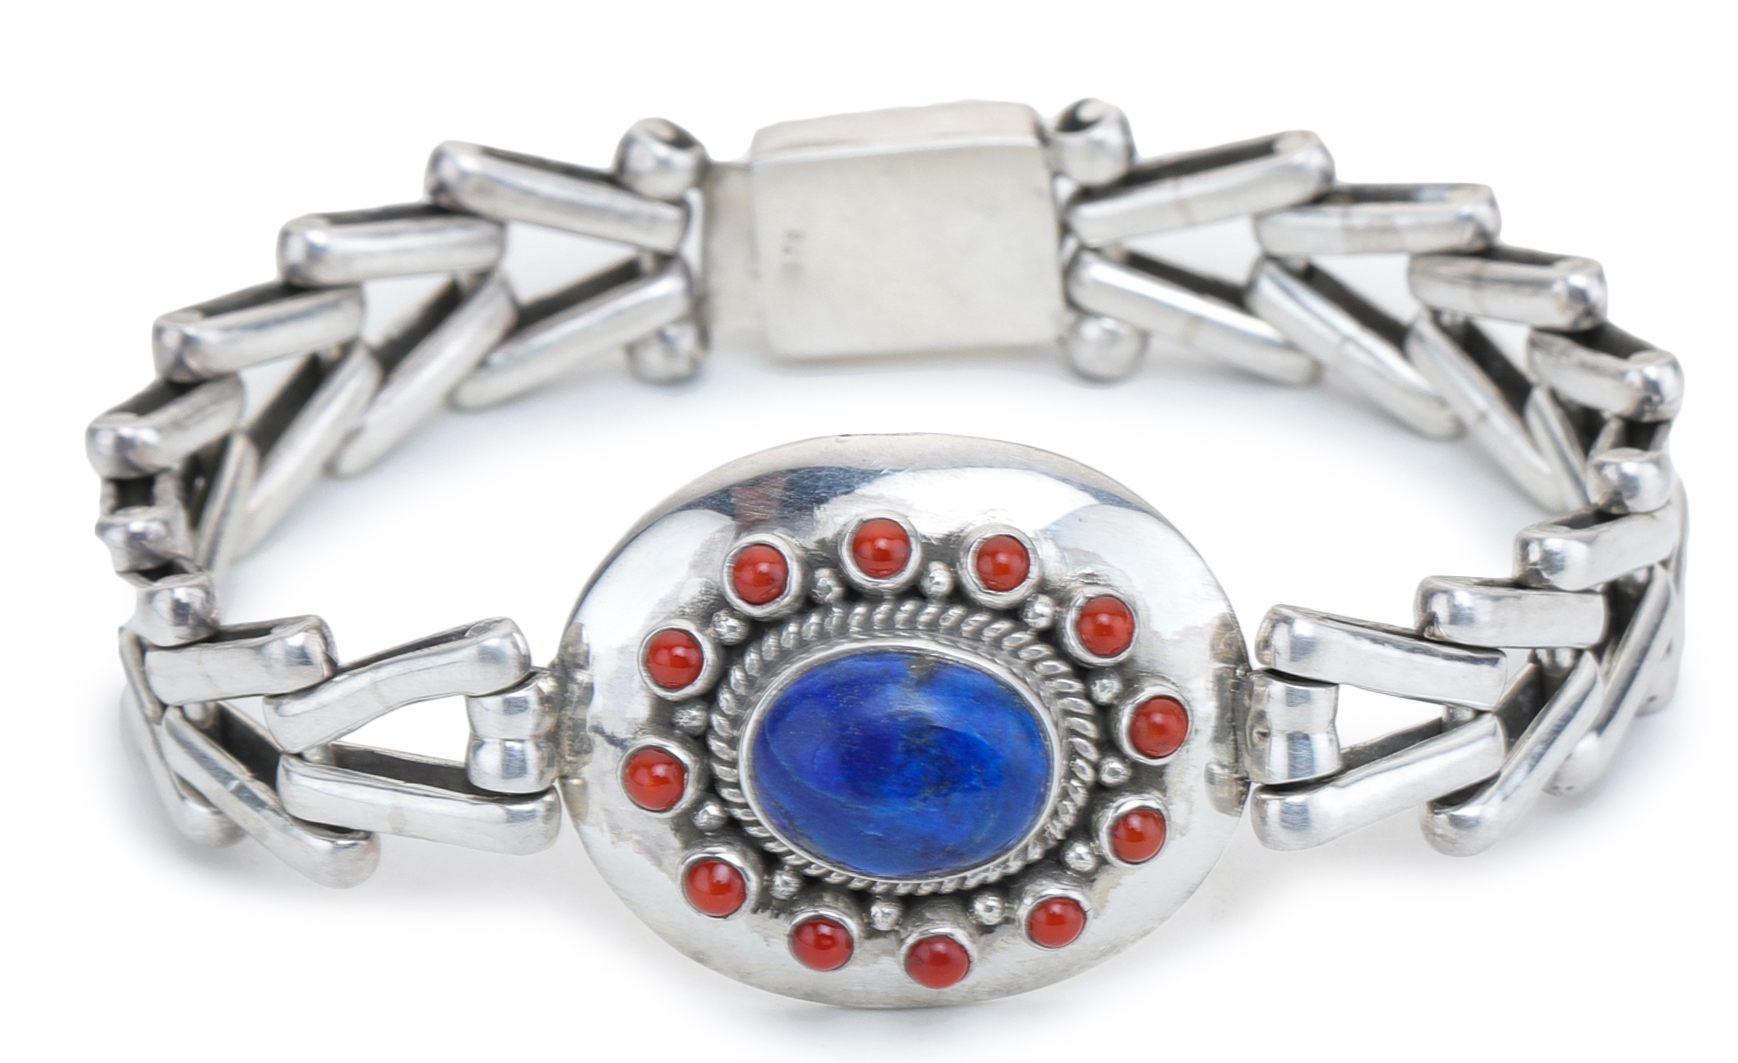 Smaller Bead Charmed Lapis Blessing Bracelet - Made As Intended